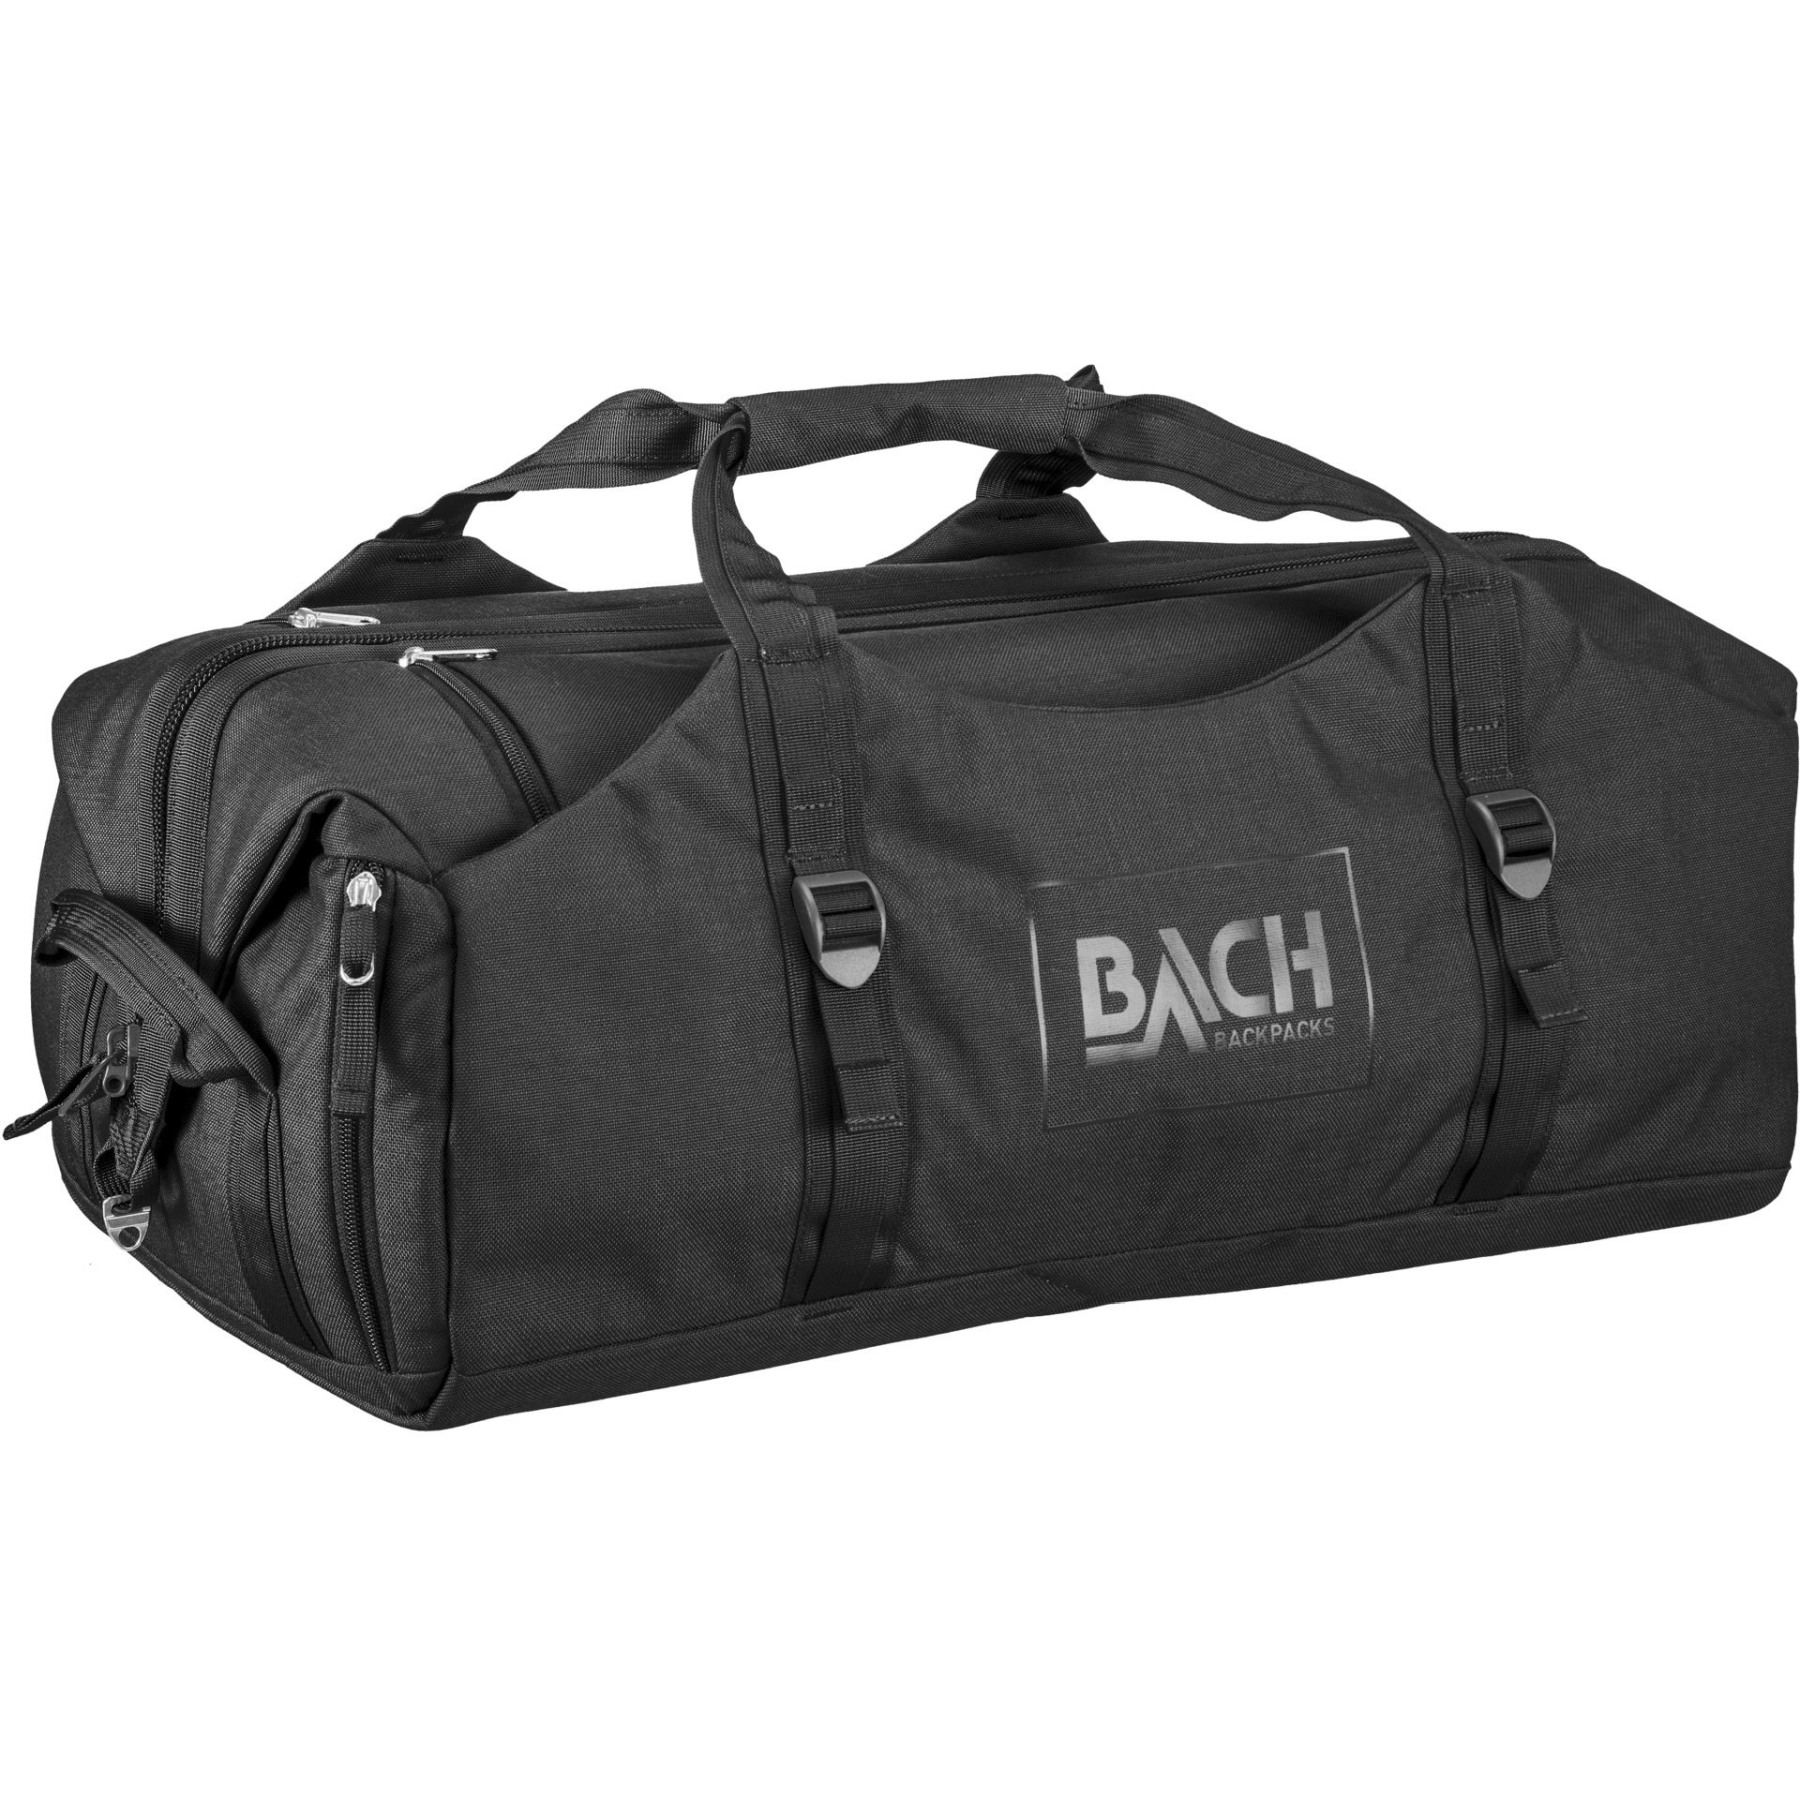 Produktbild von Bach Dr. Duffel 40 Reisetasche - black